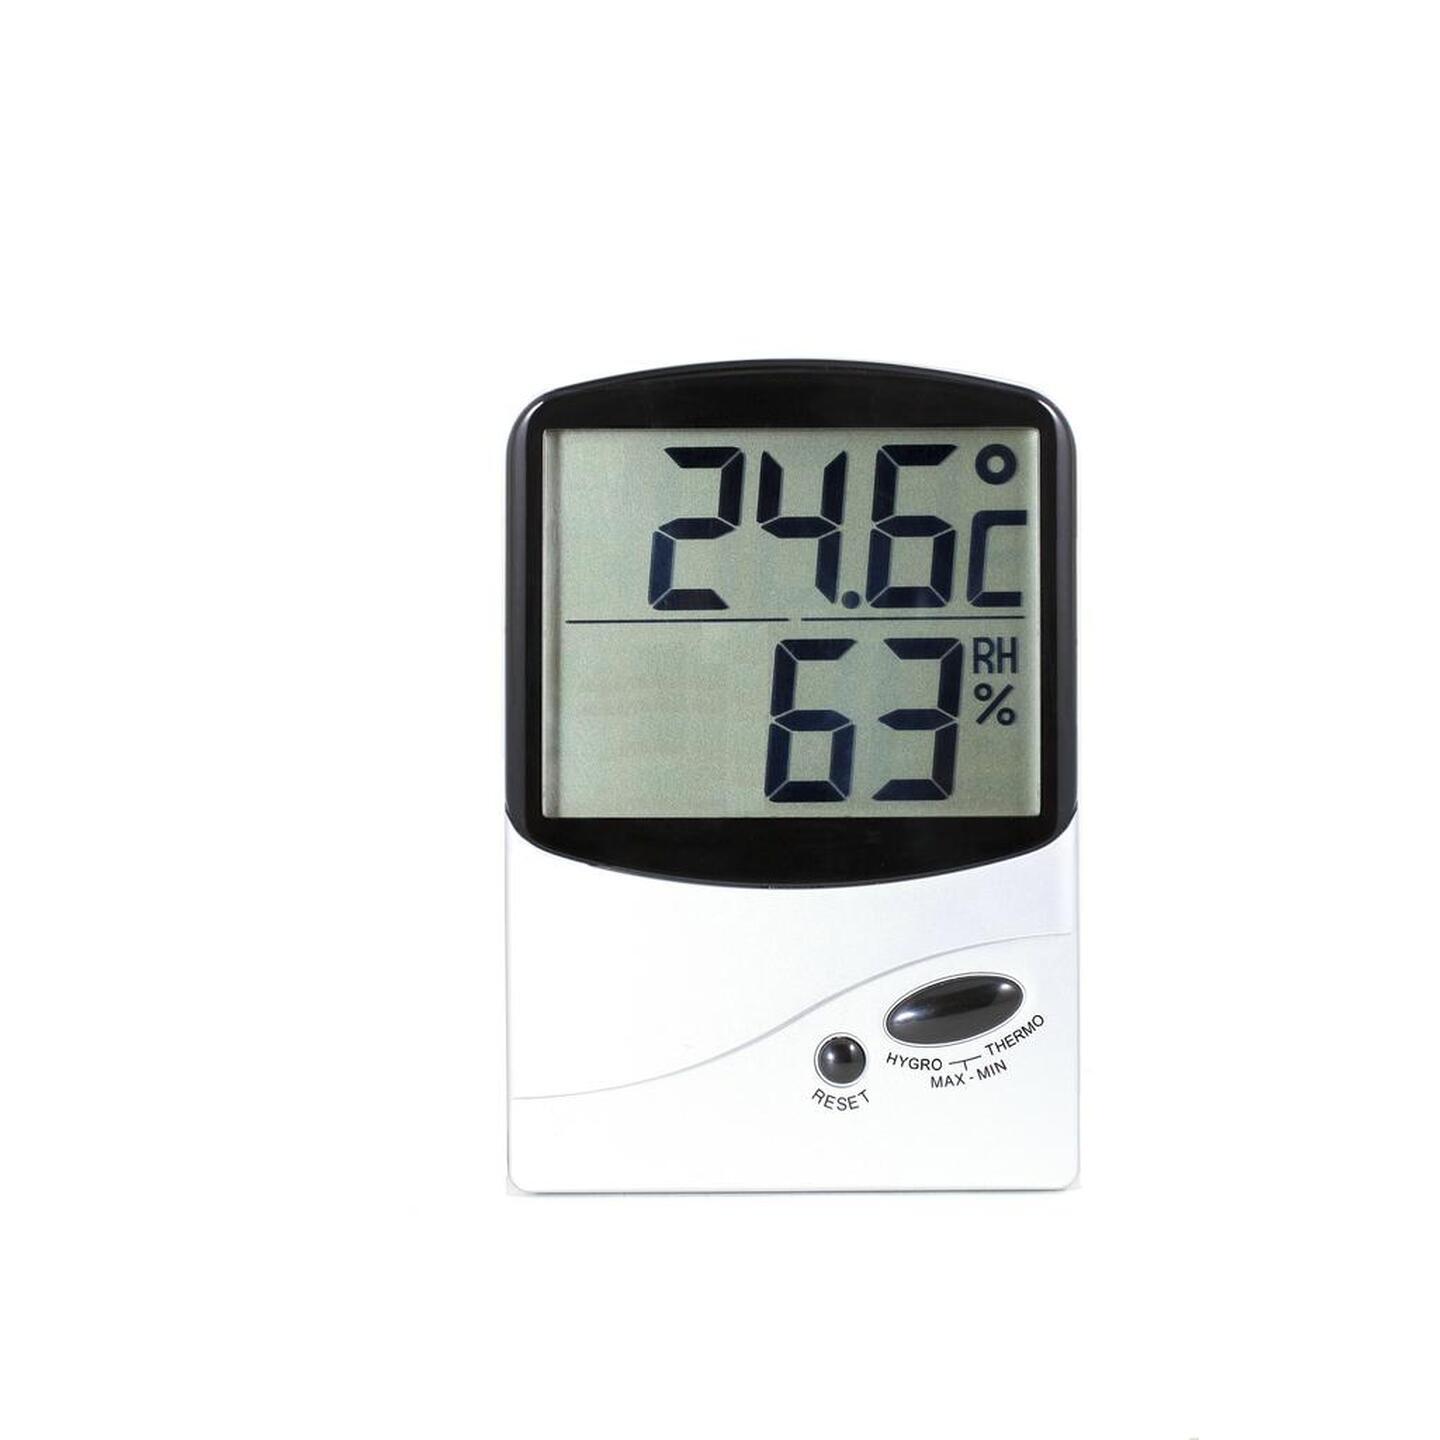 Jumbo Display Thermometer/Hygrometer